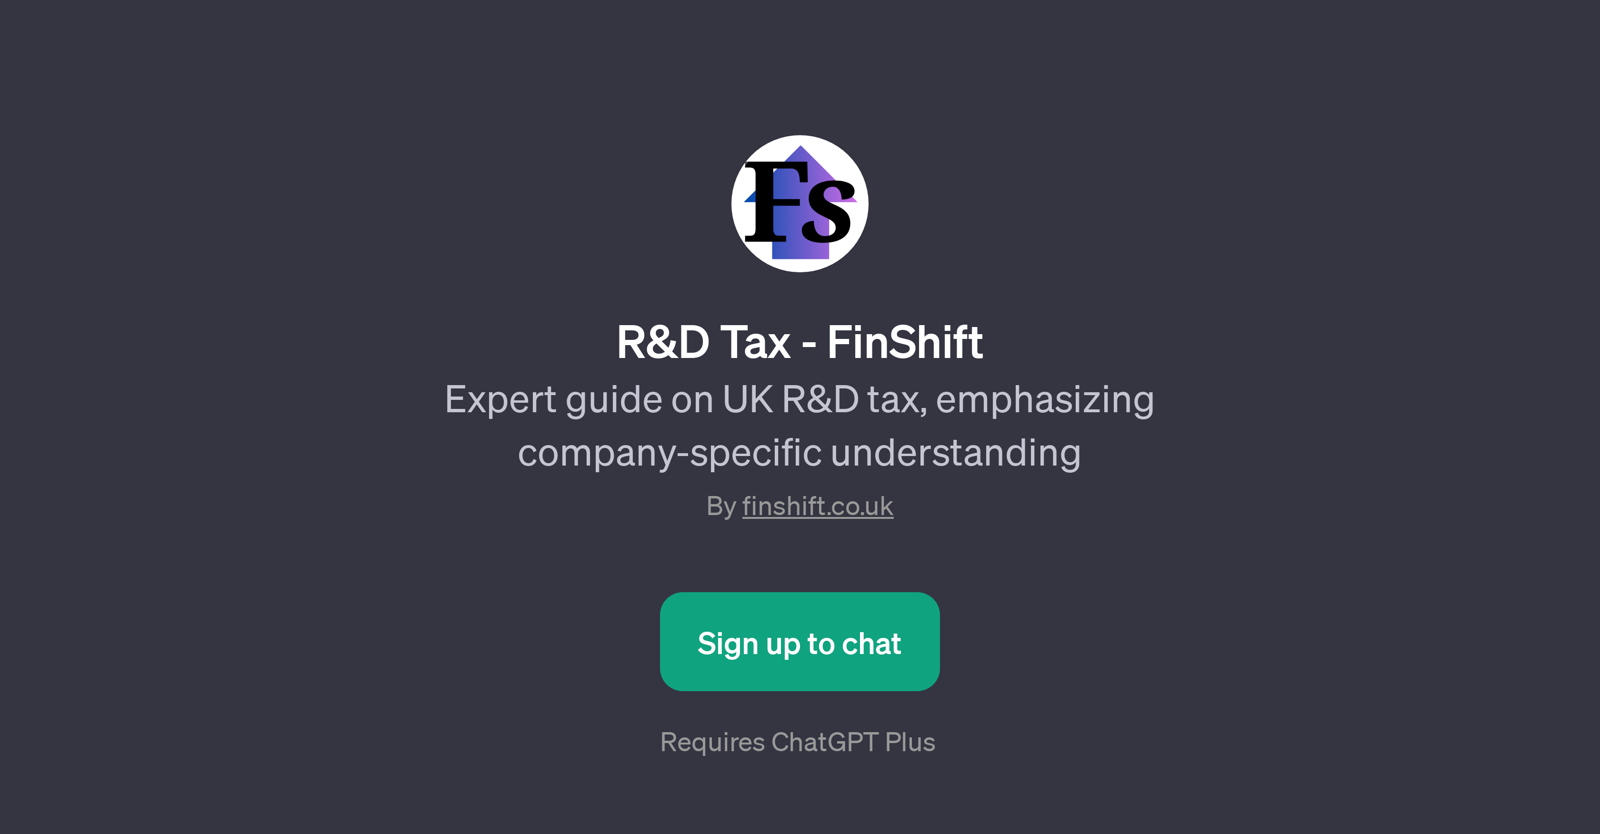 R&D Tax - FinShift website